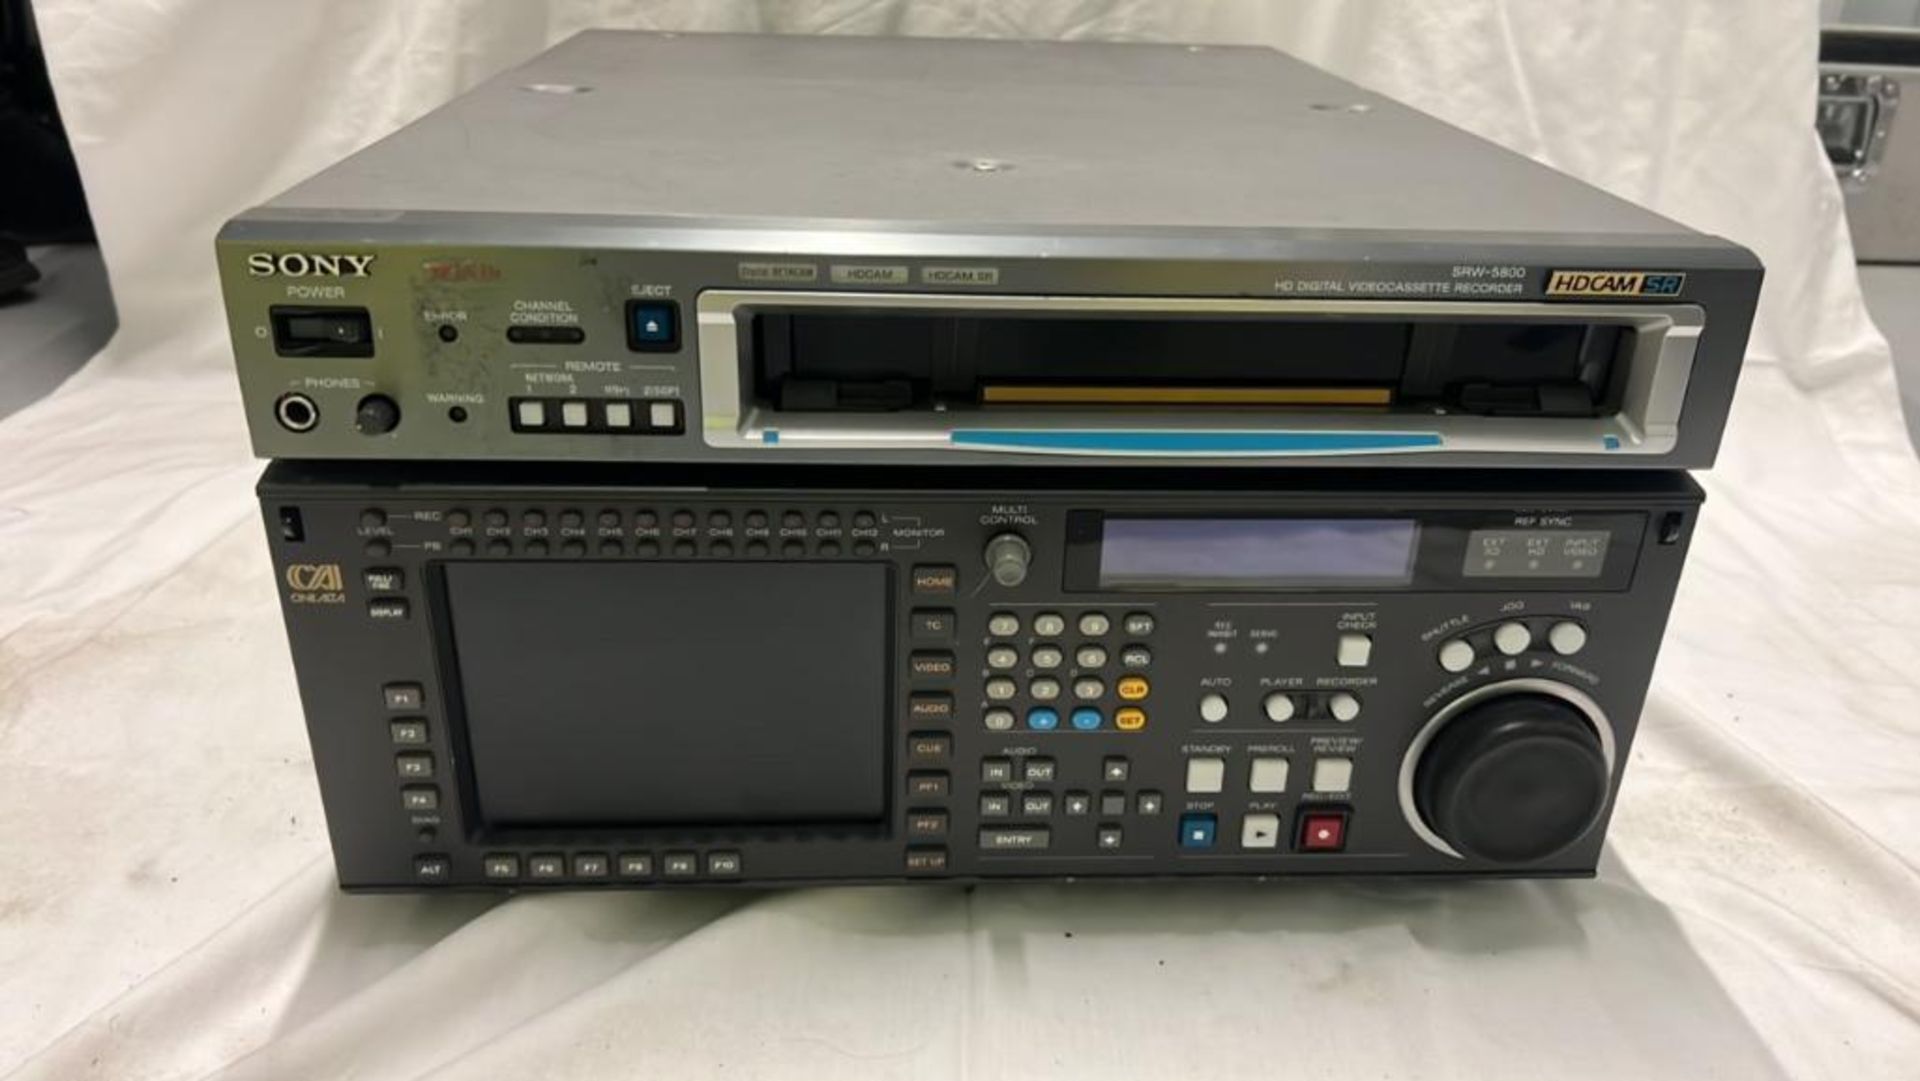 Sony SRW-5800/2 HDCAM Studio Recorder with flight case SN: 12335